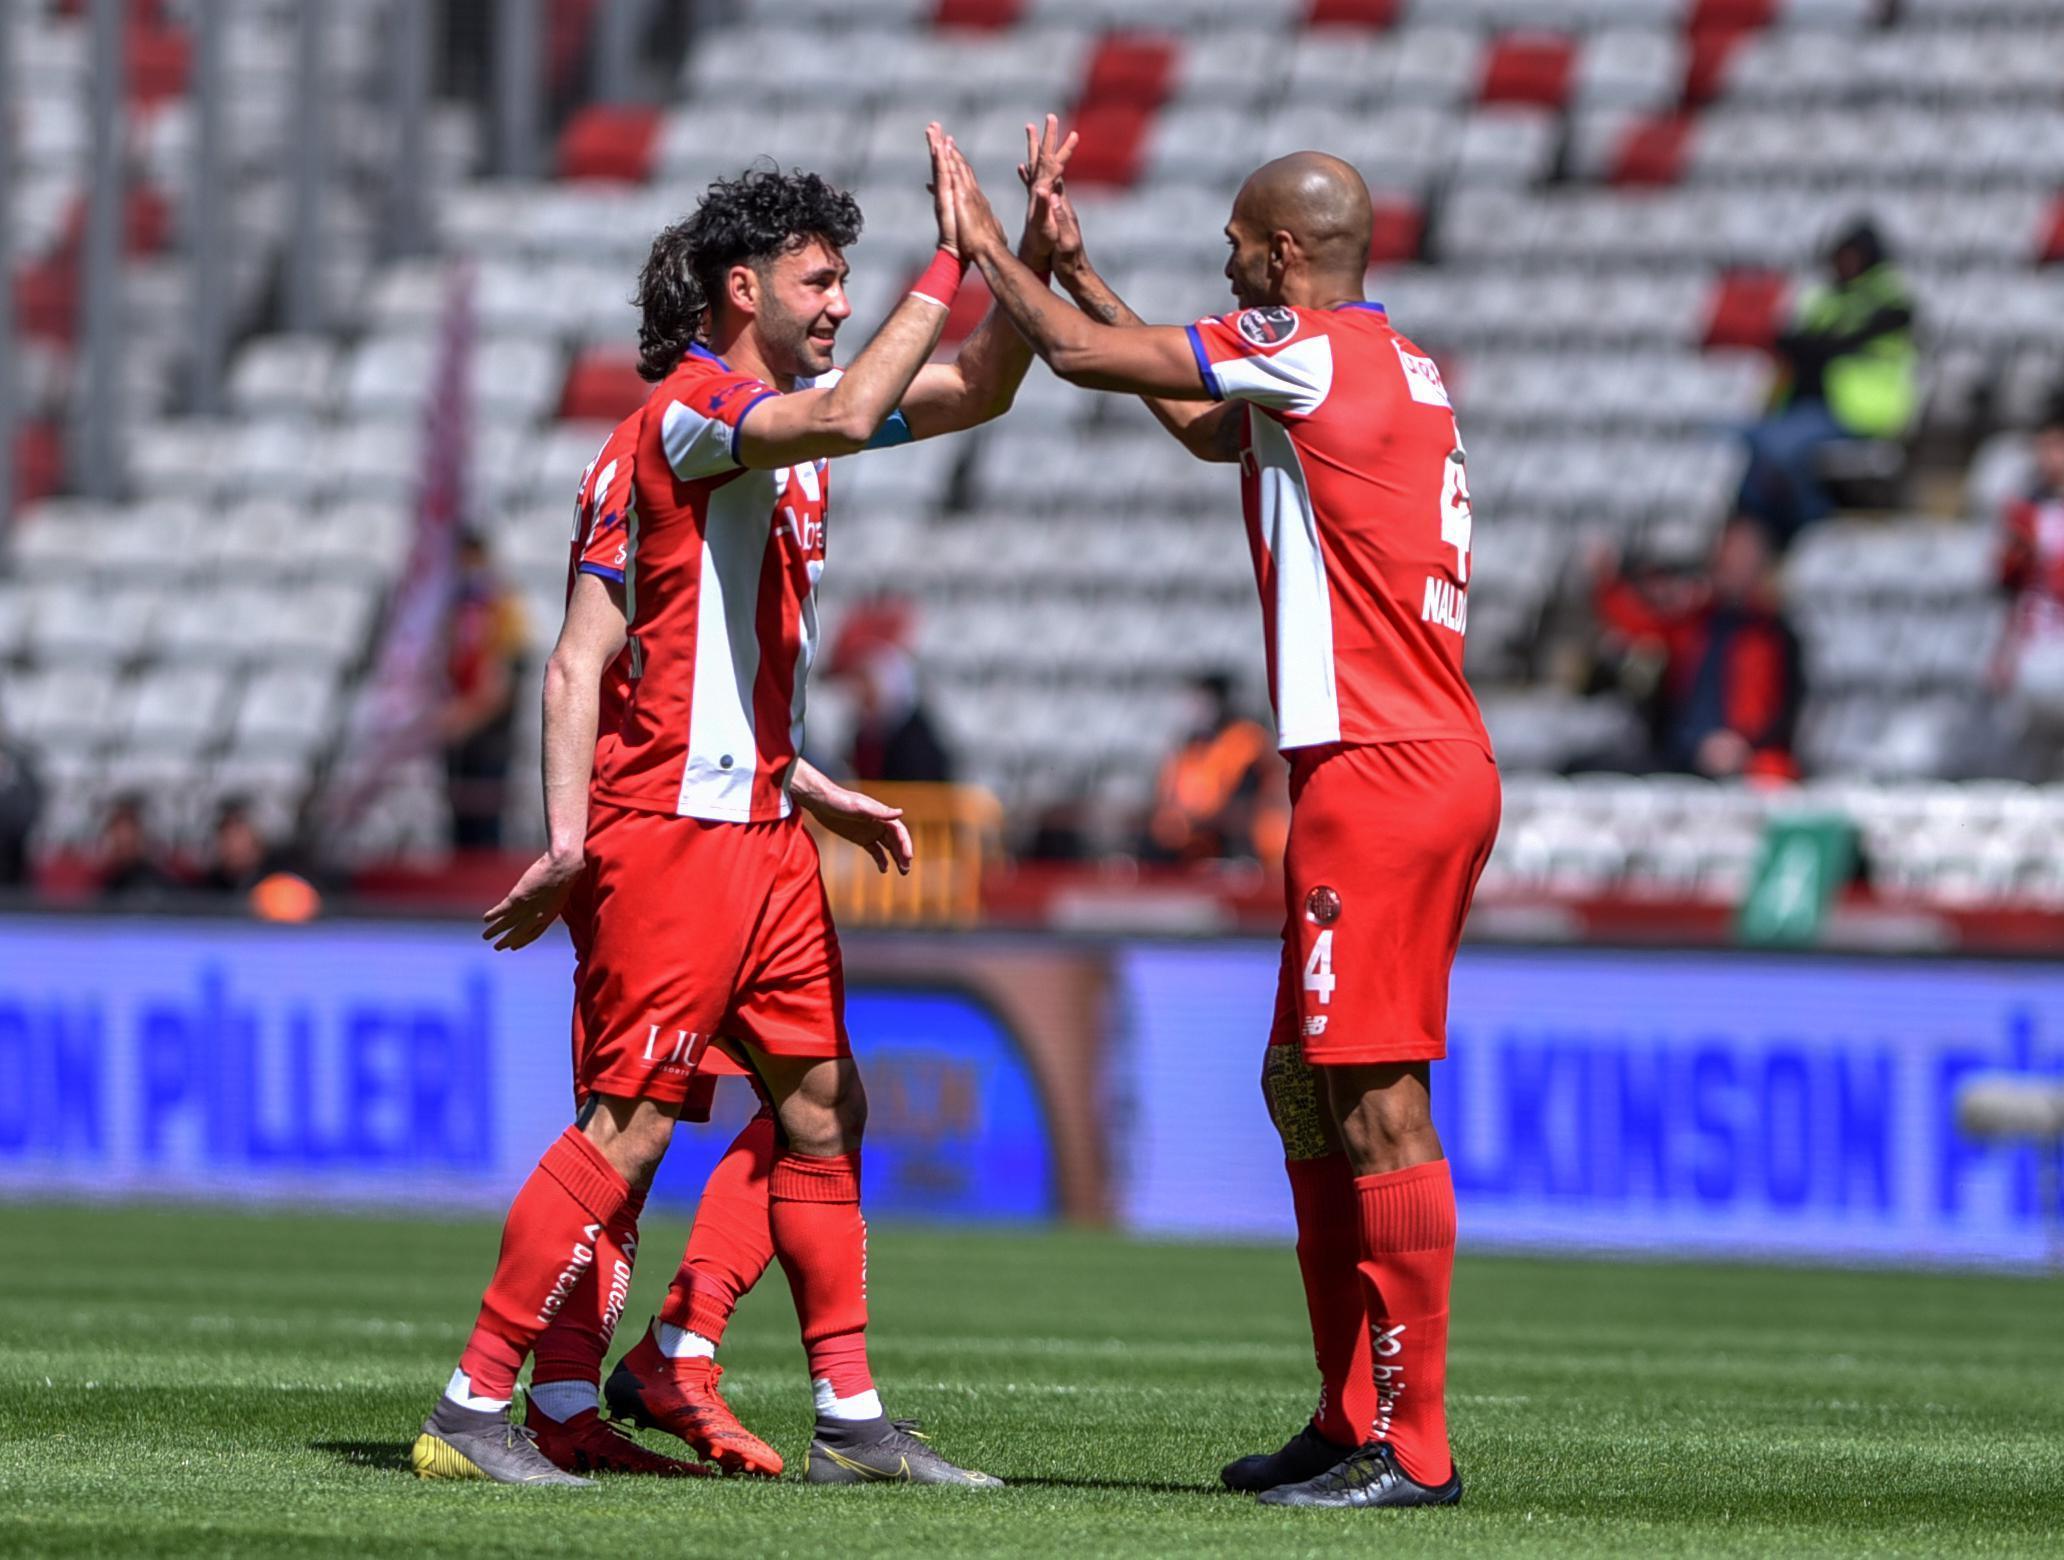 ÖZET | Antalyaspor - Giresunspor maç sonucu: 4-1